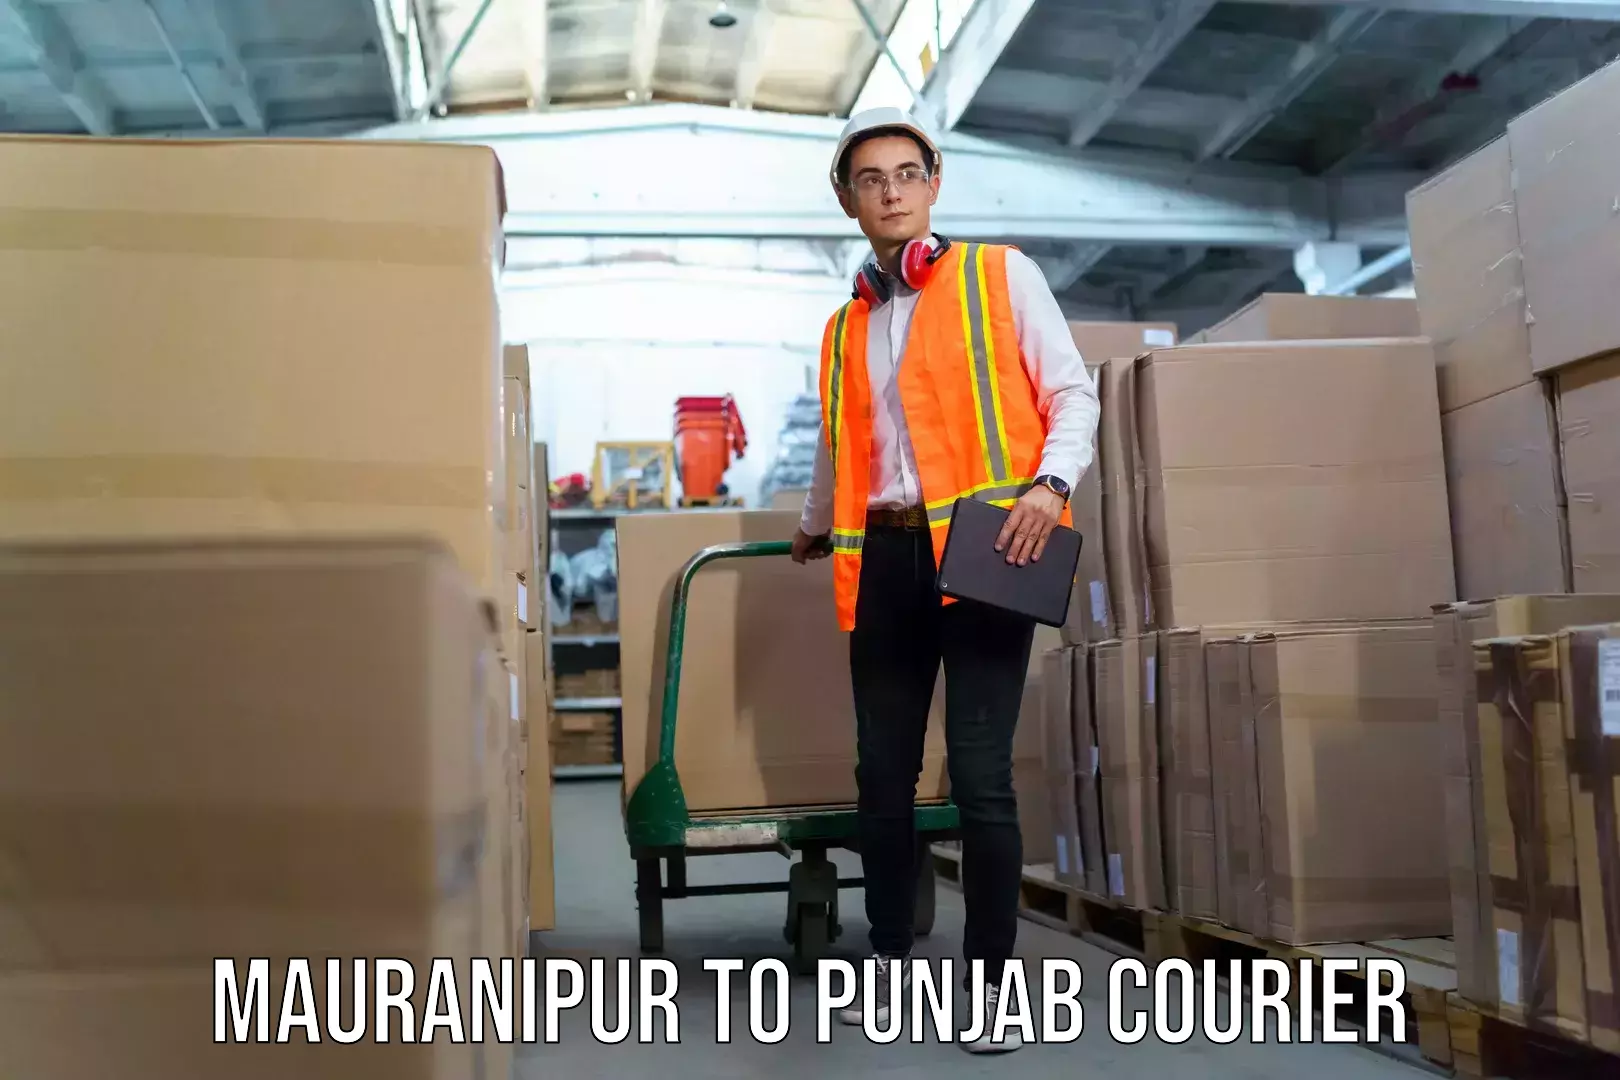 Baggage shipping service Mauranipur to Punjab